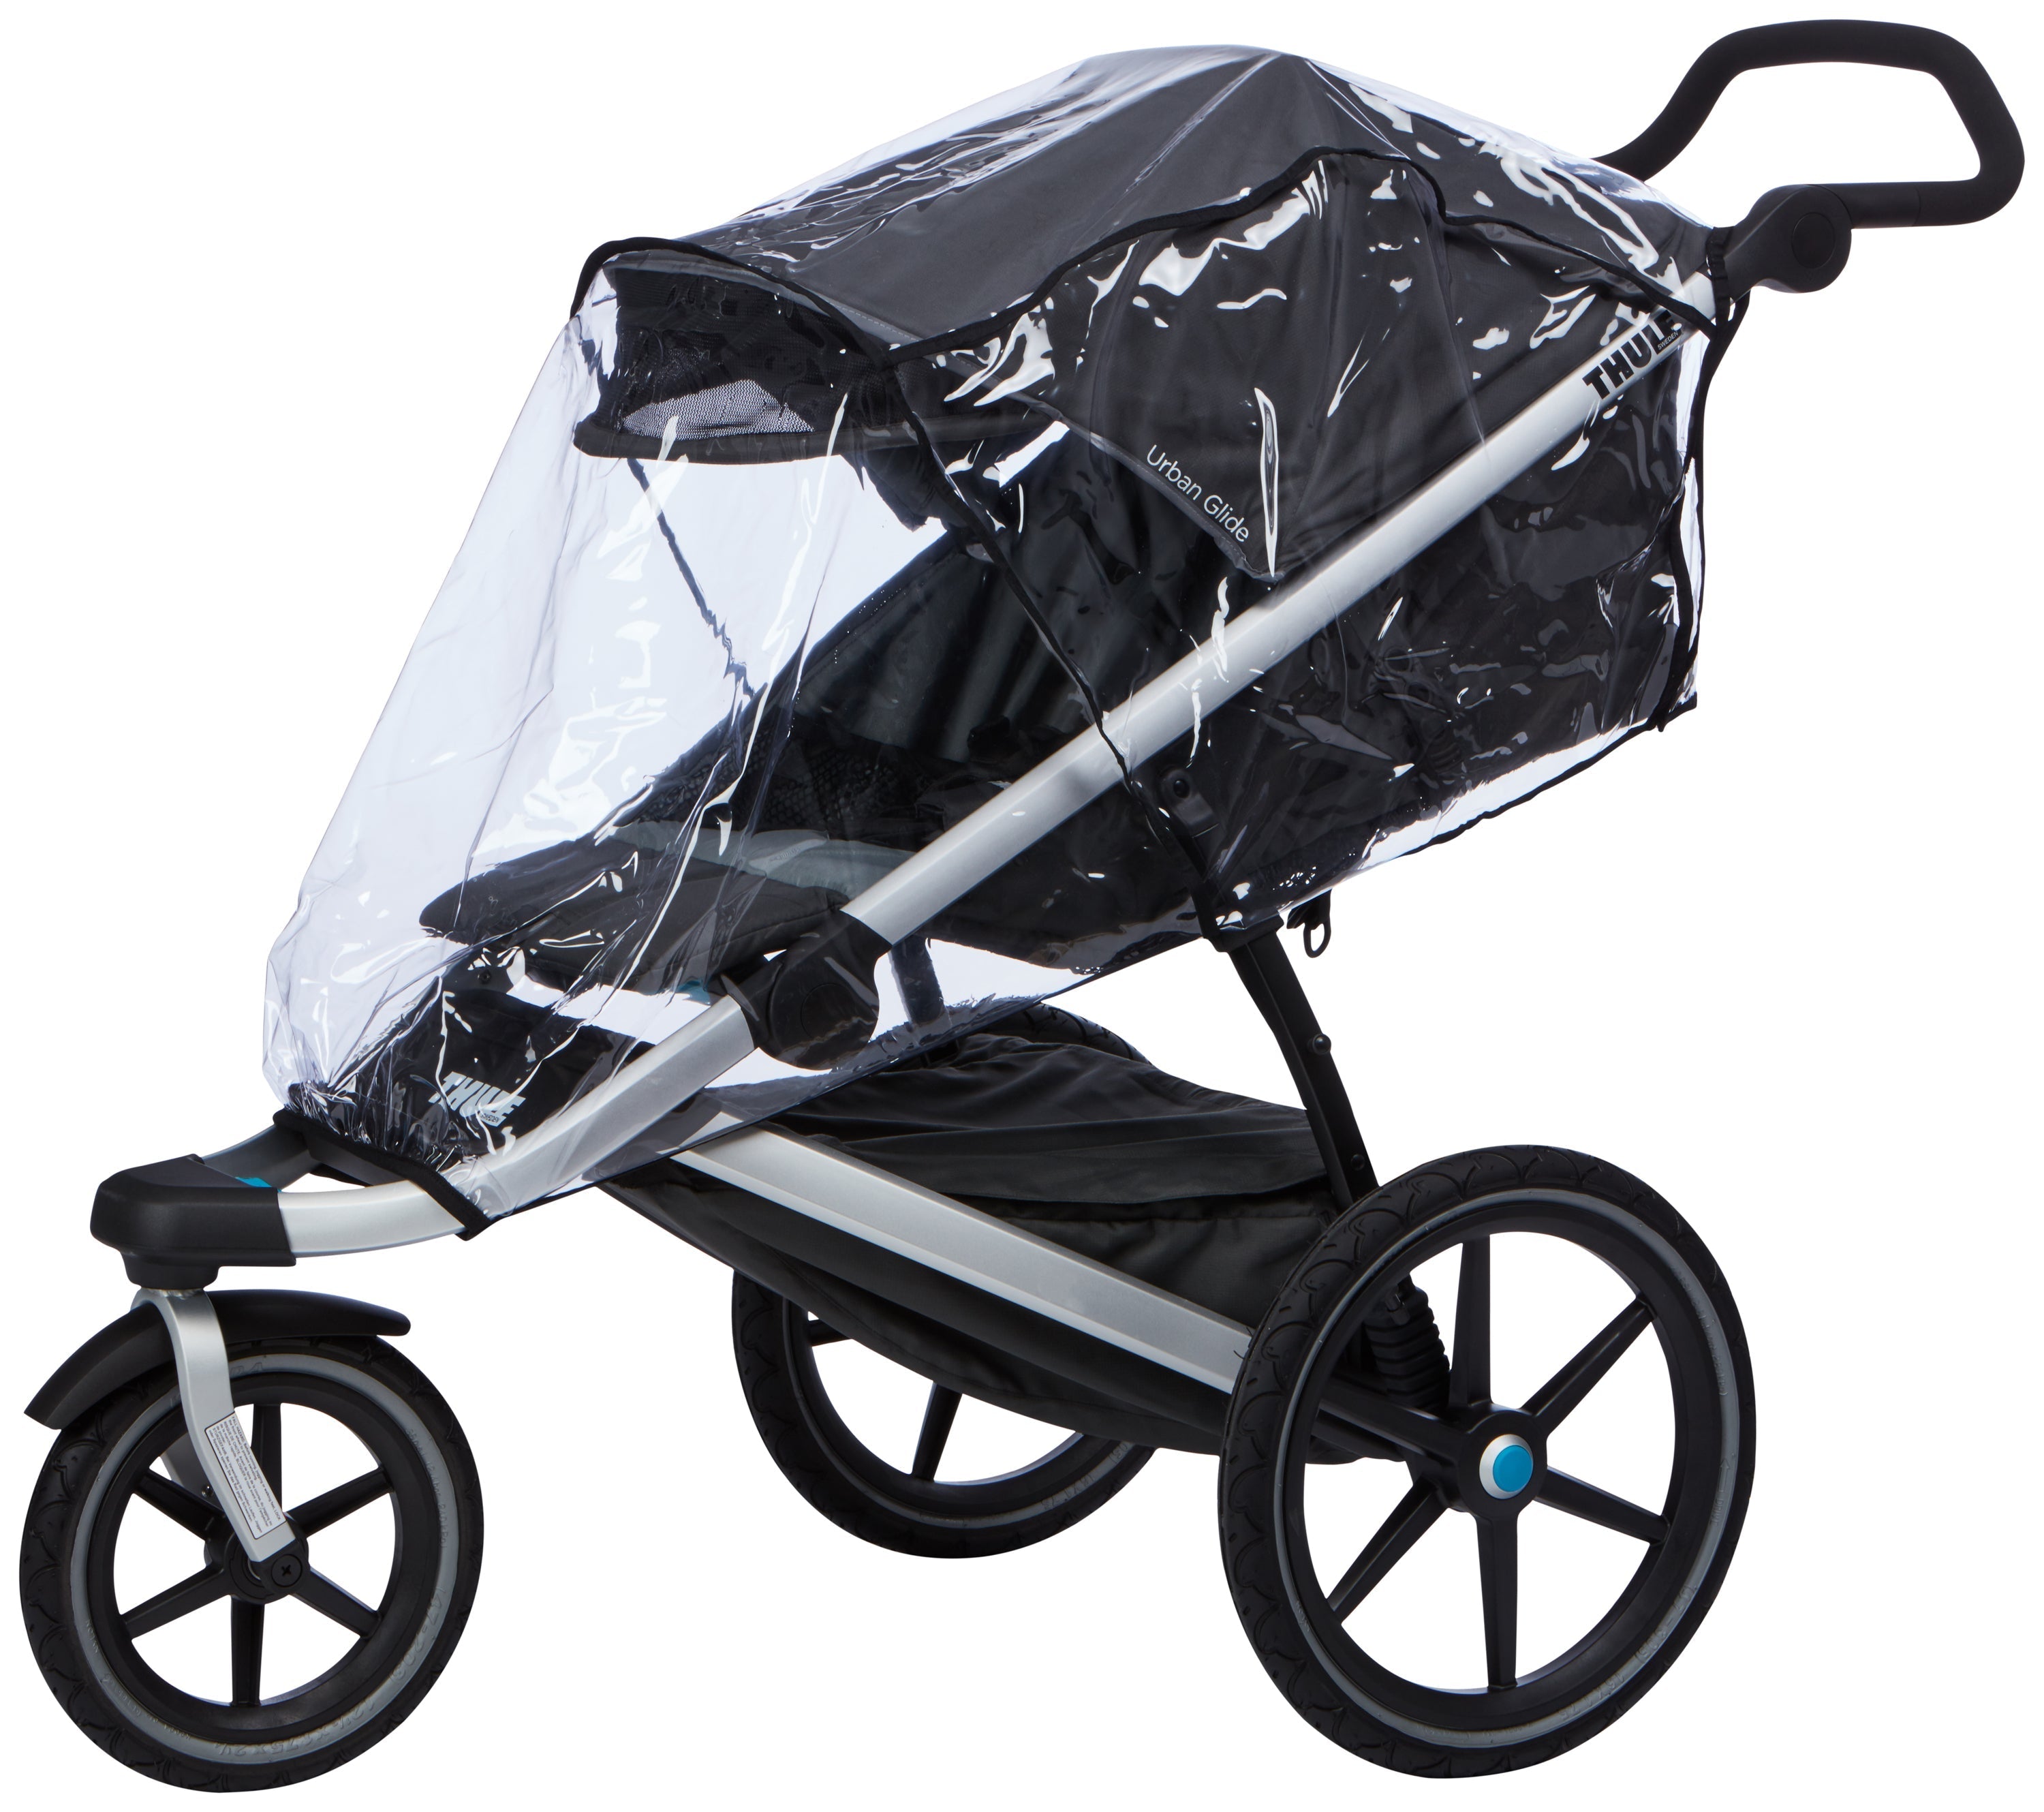 Thule Urban Glide 2 Newborn Bundle: Stroller + 3 Accessories + Newborn Inlay